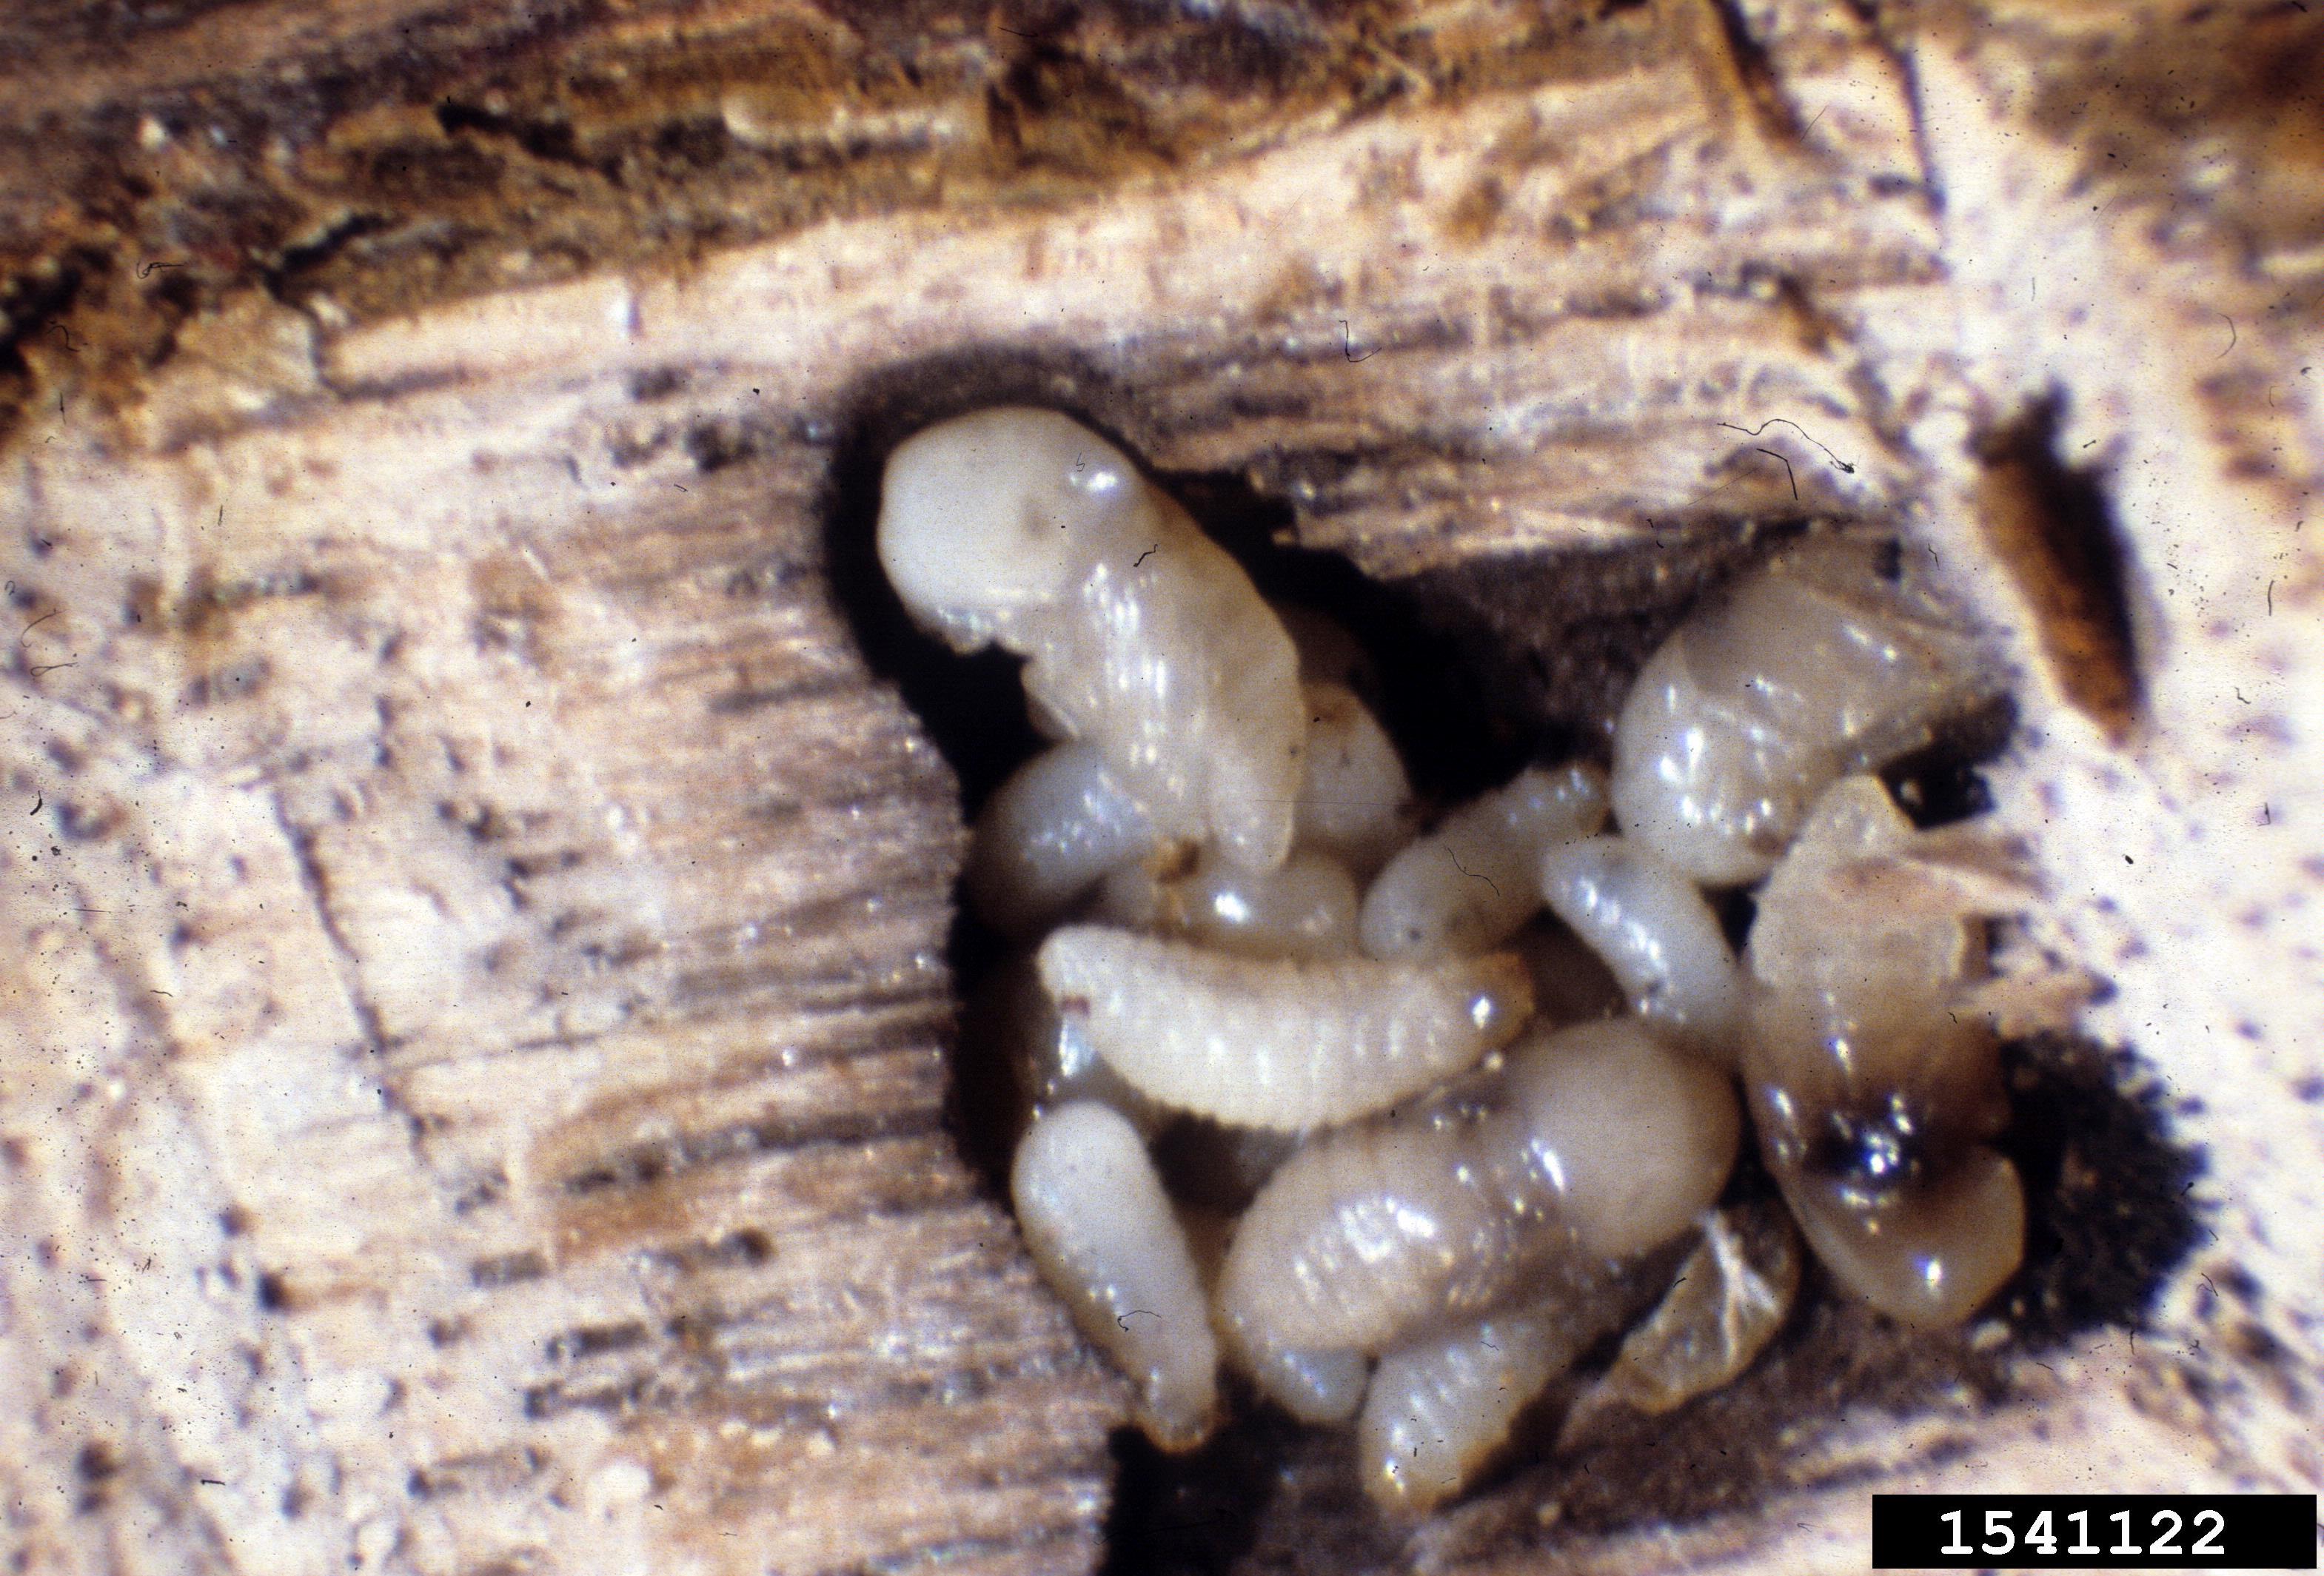 Larva and pupae of a granulate ambrosia beetle